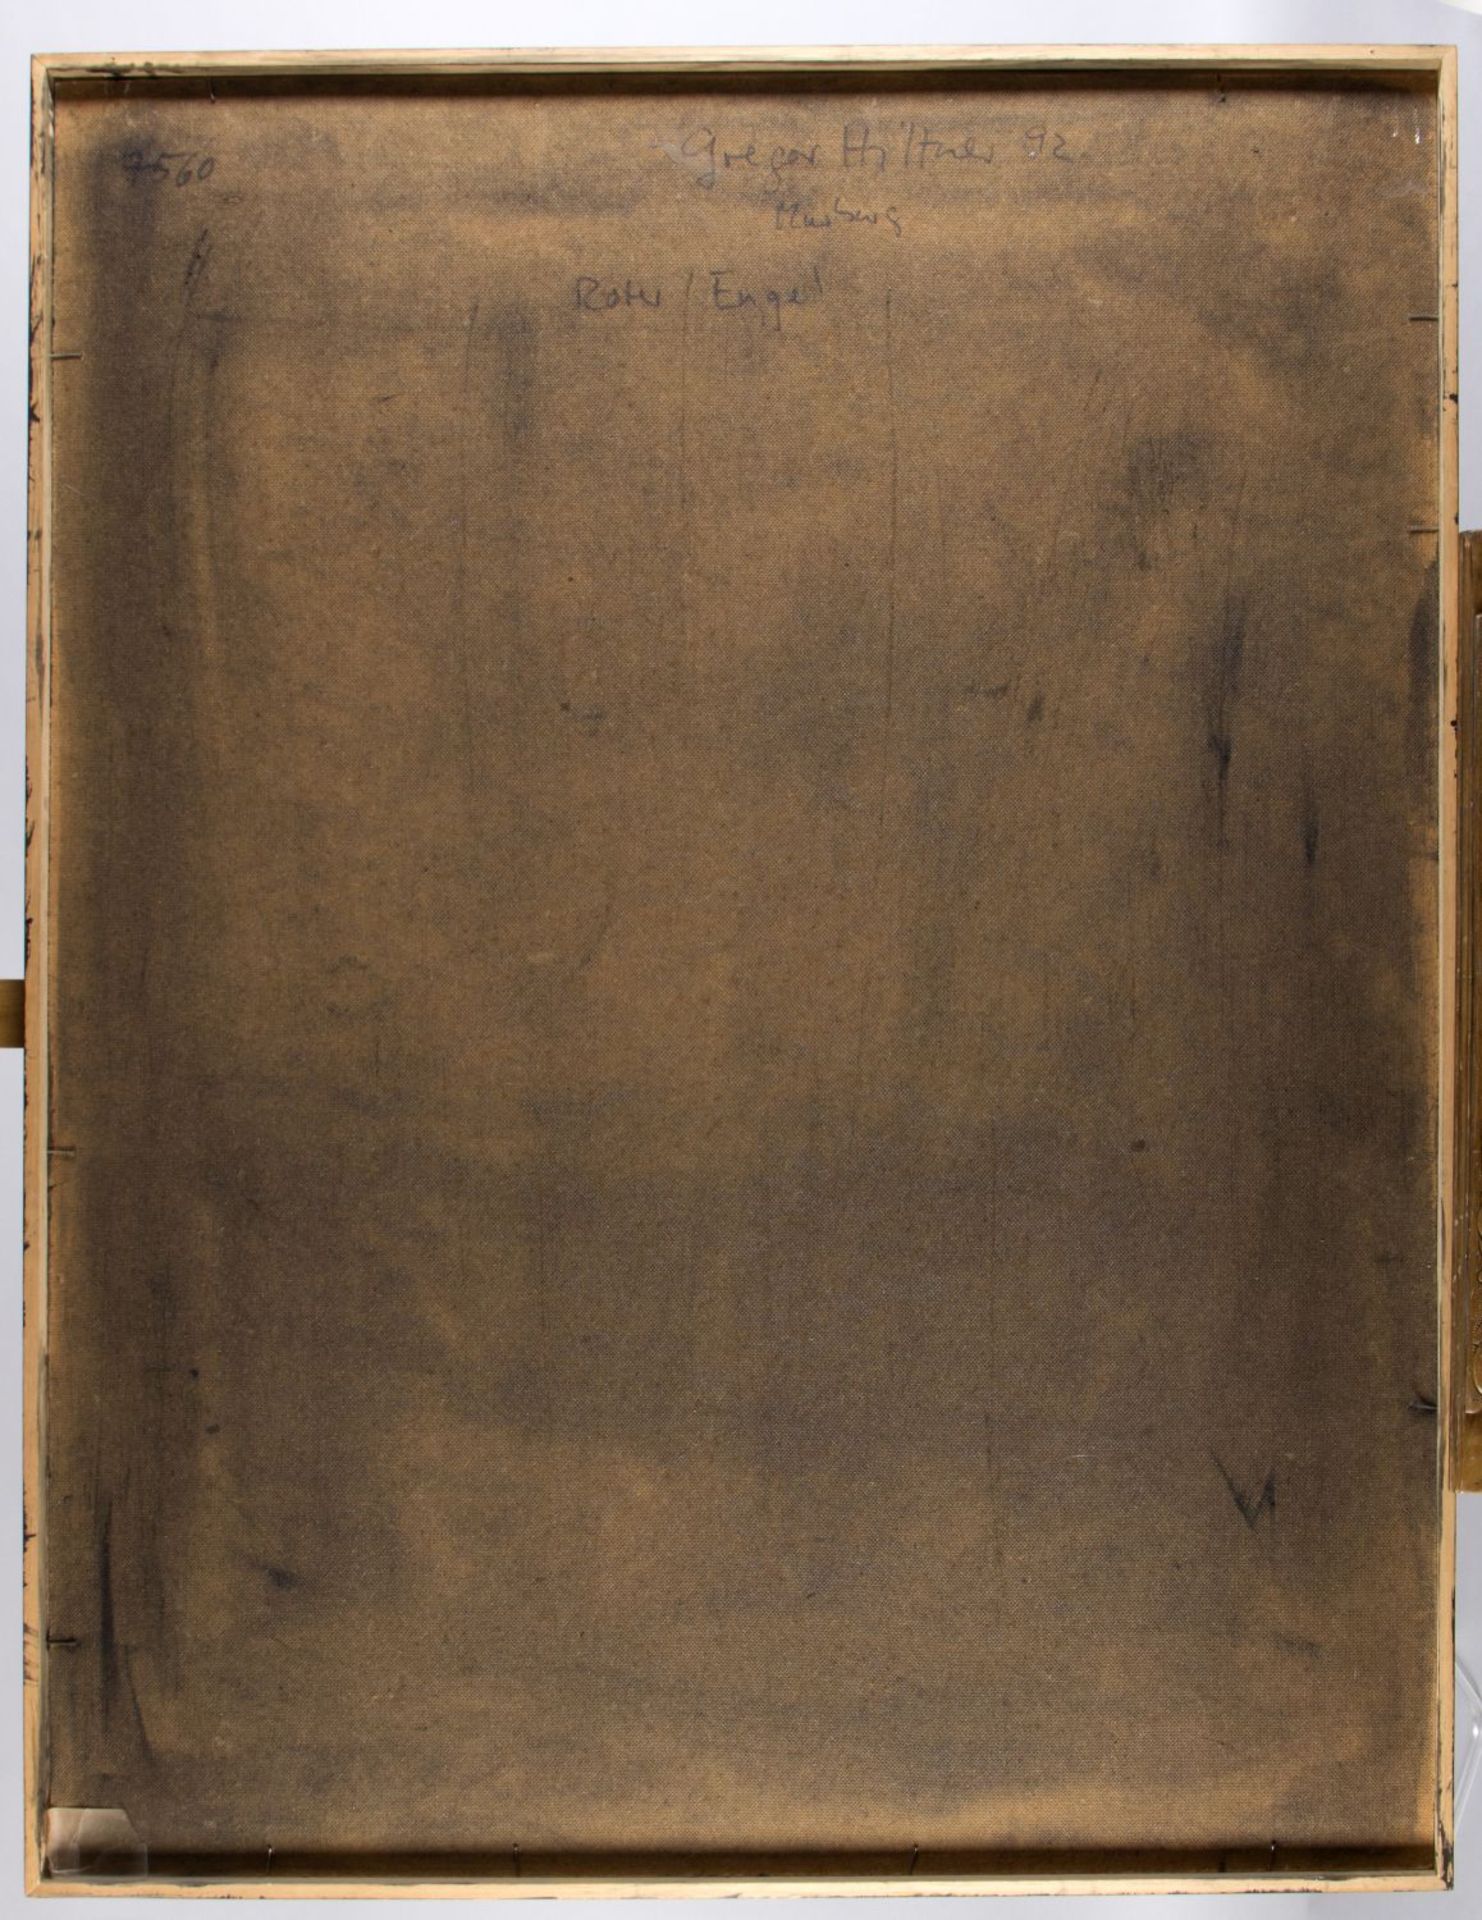 Hiltner, Gregor. 1950 Nürnberg Roter Engel. Mischtechn./Pressspan. (19)92. 130 x 100 cm. Gerahmt. Ve - Bild 2 aus 2